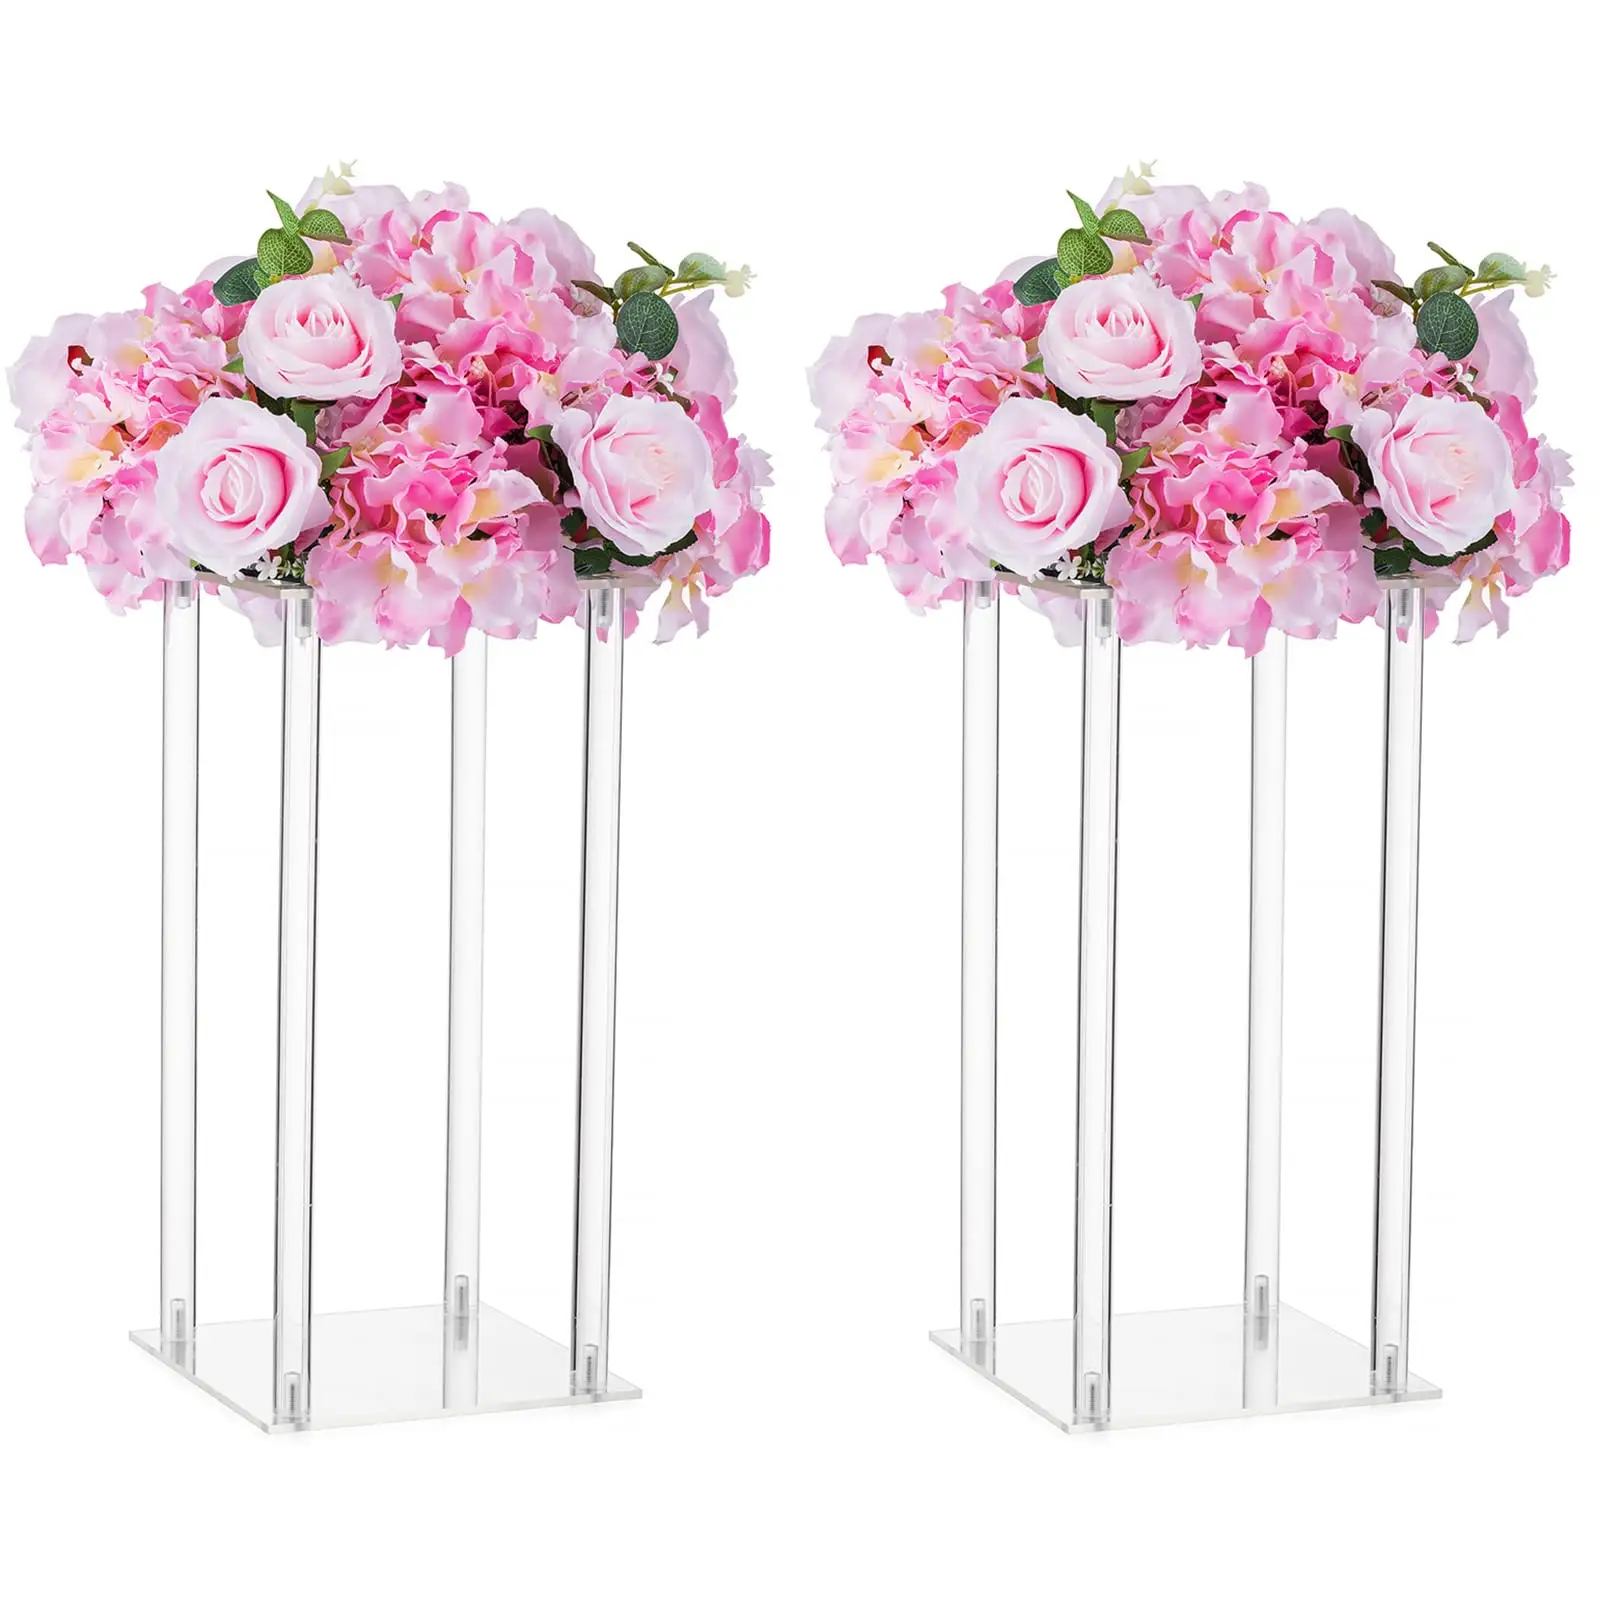 Jarrones acrílicos de florero alto de 39 pulgadas, soporte de flores para decoraciones de mesas de fiesta, mesa de decoración de bodas a granel elegante